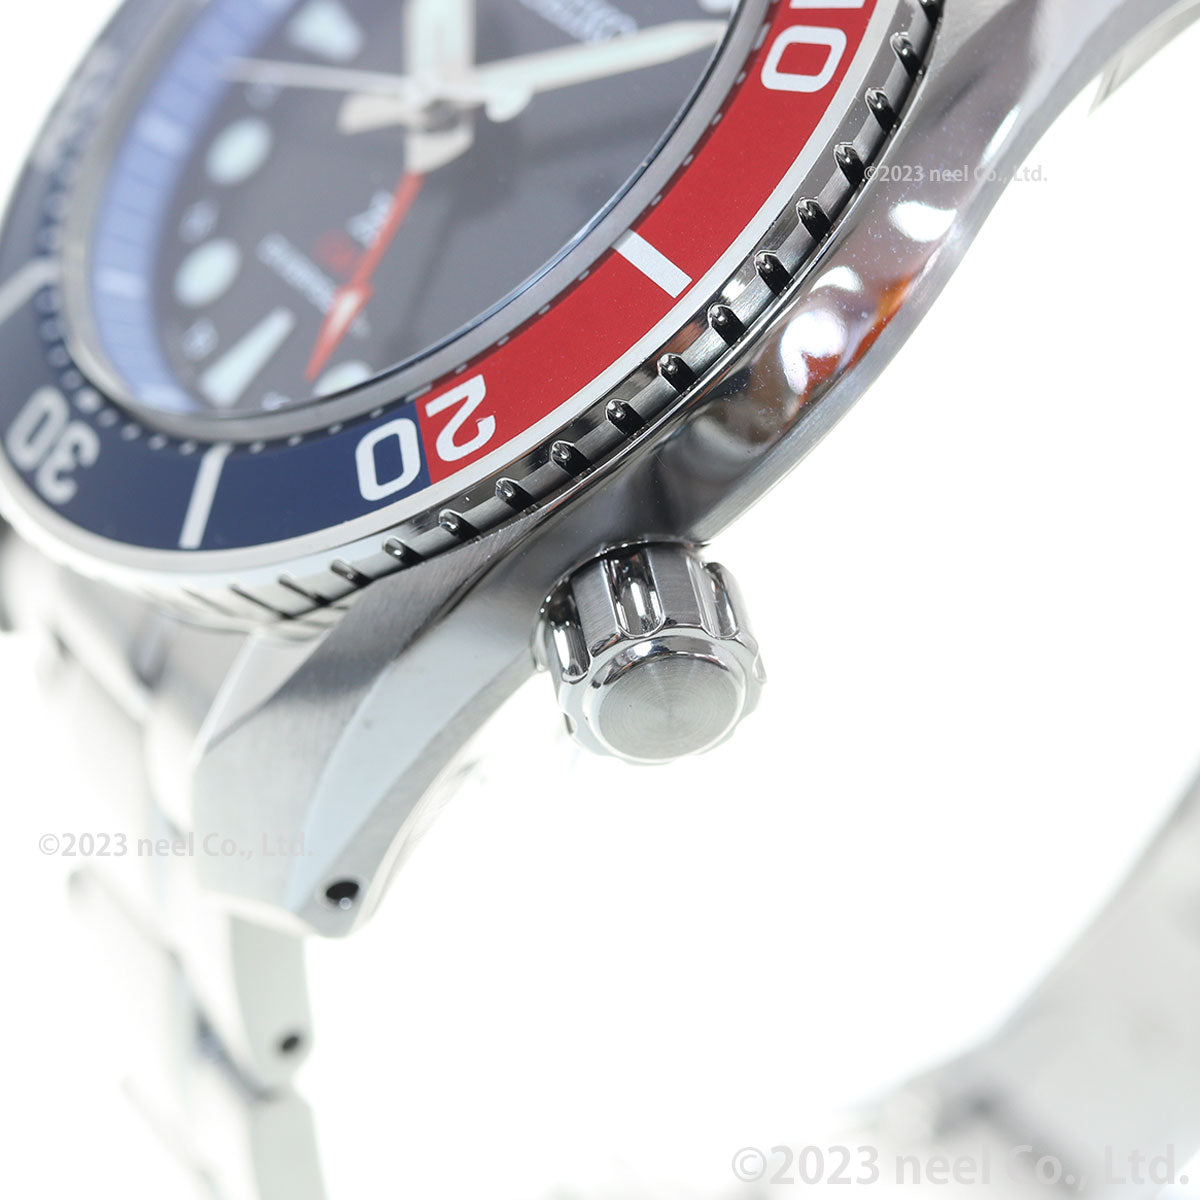 セイコー プロスペックス SEIKO PROSPEX ダイバースキューバ ソーラー 腕時計 メンズ スモウ SUMO GMT SBPK005